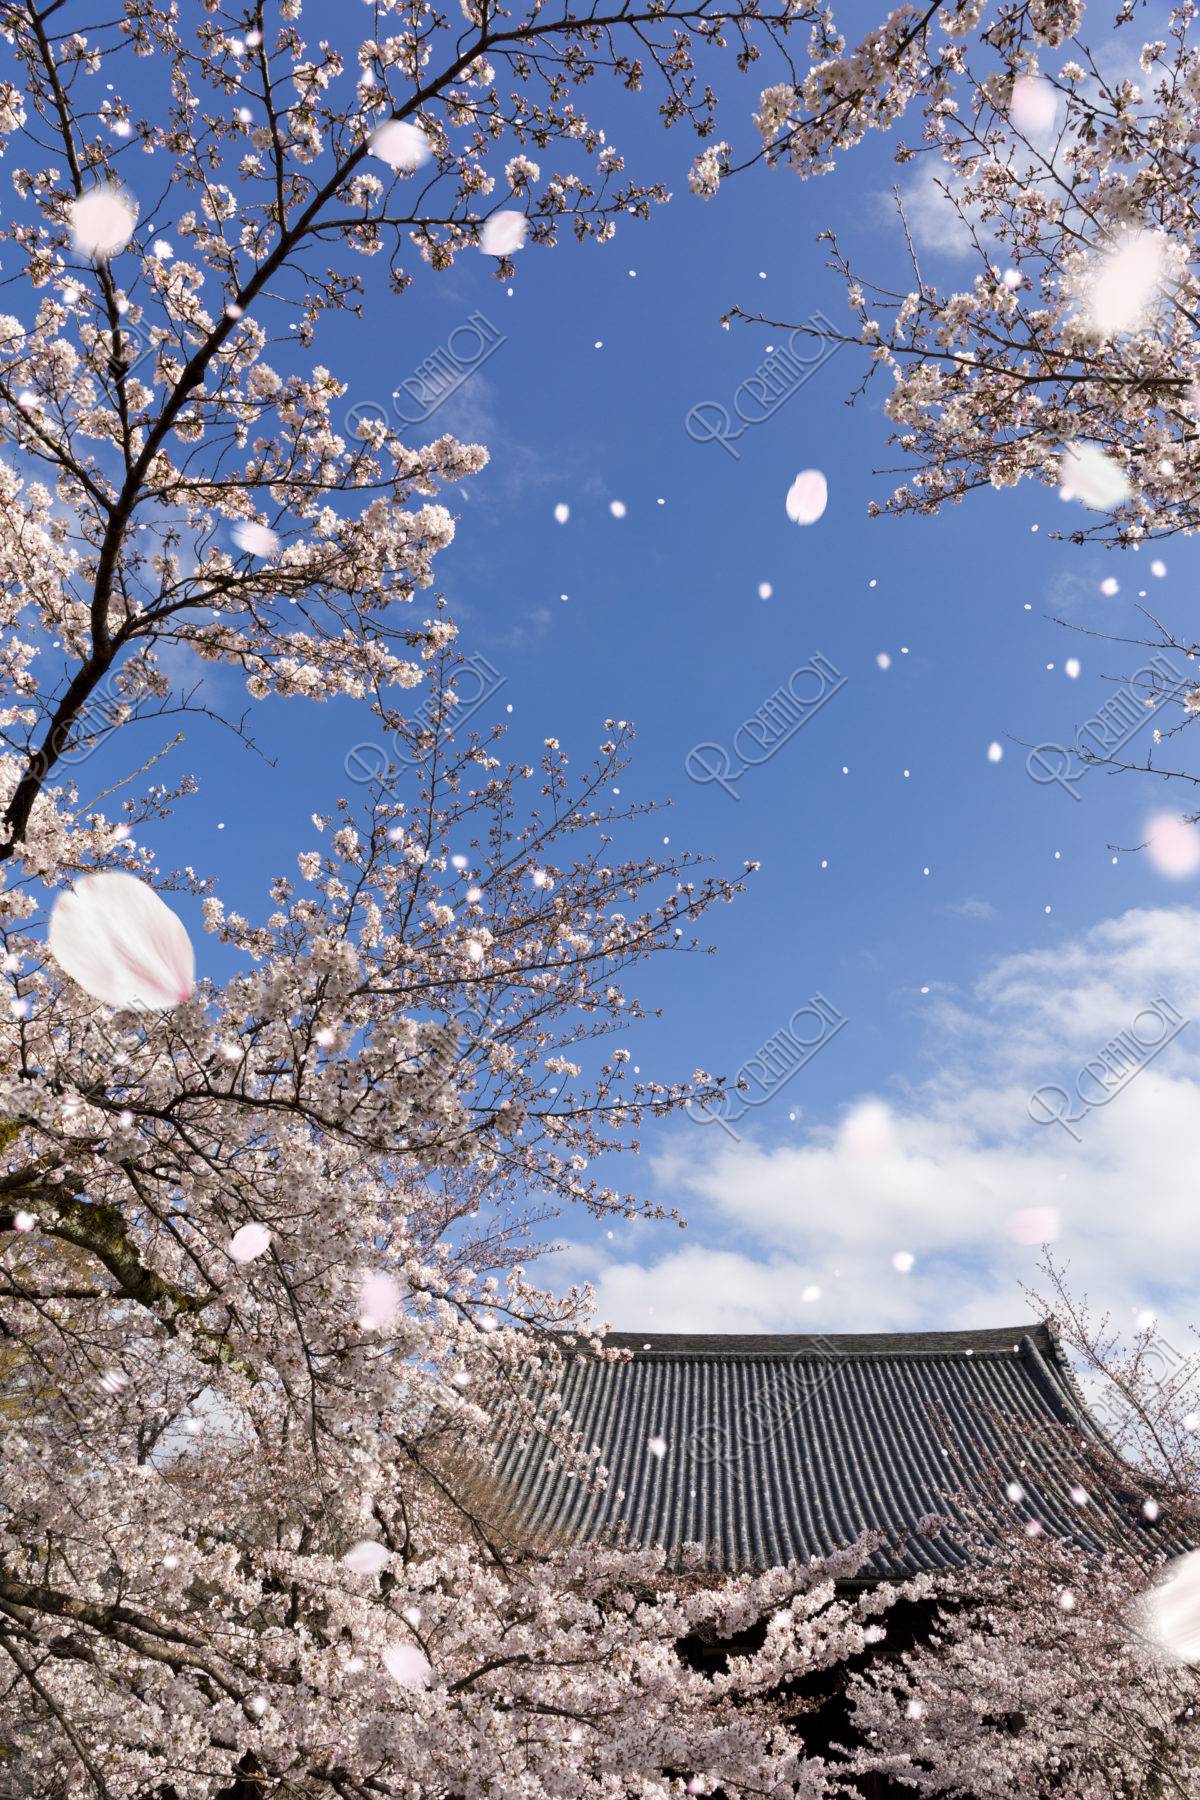 立本寺と桜吹雪